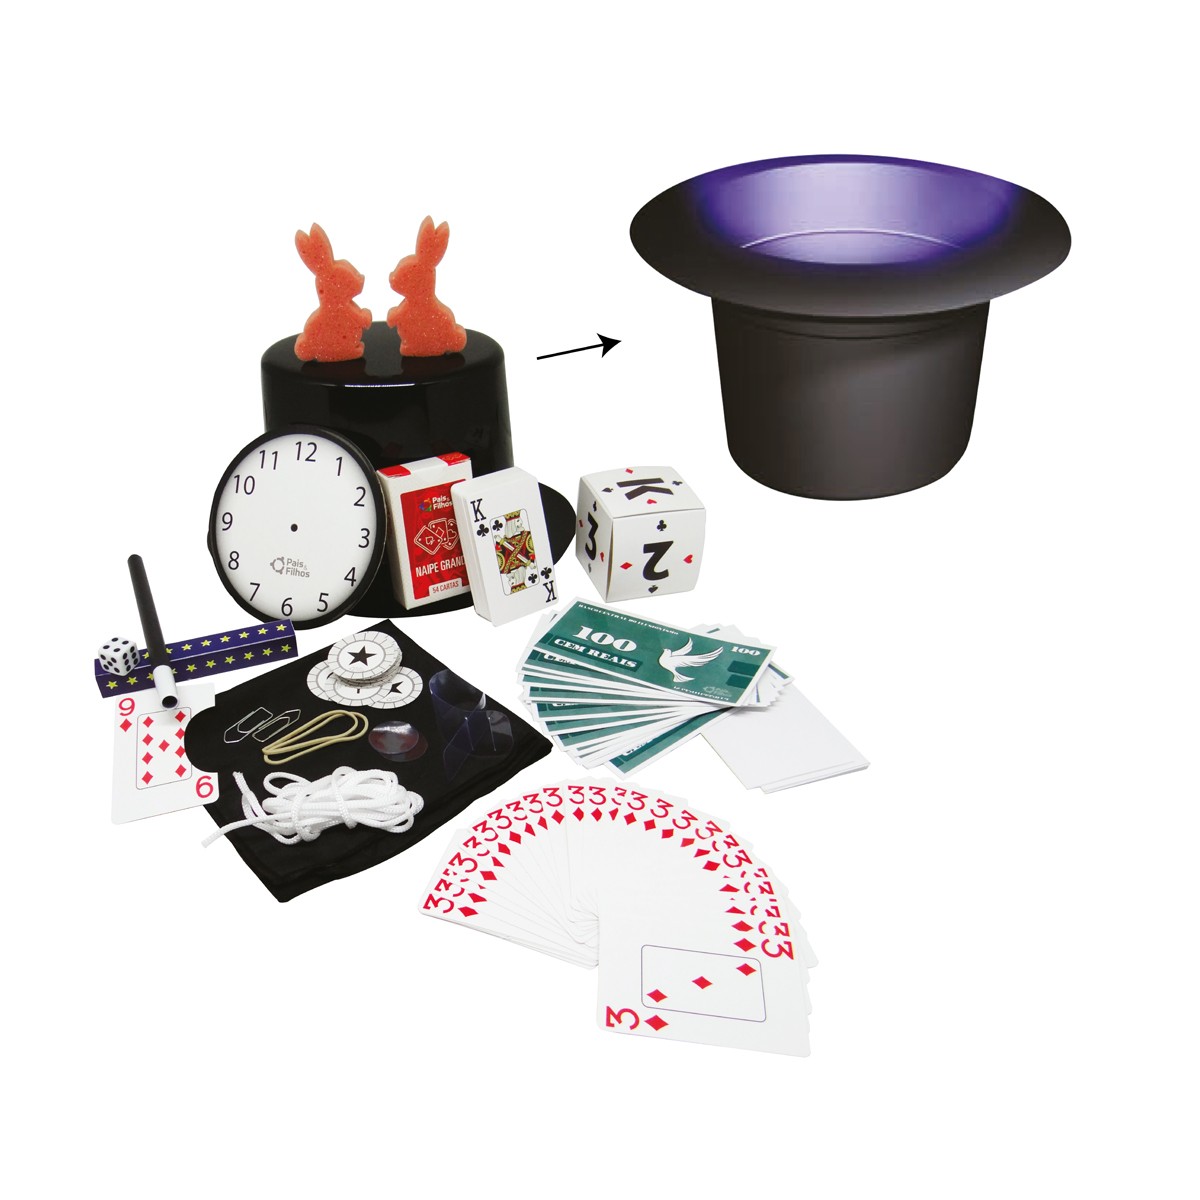 Kit de mágica infantil com 30 truques,varinha e cartola-7282-41003